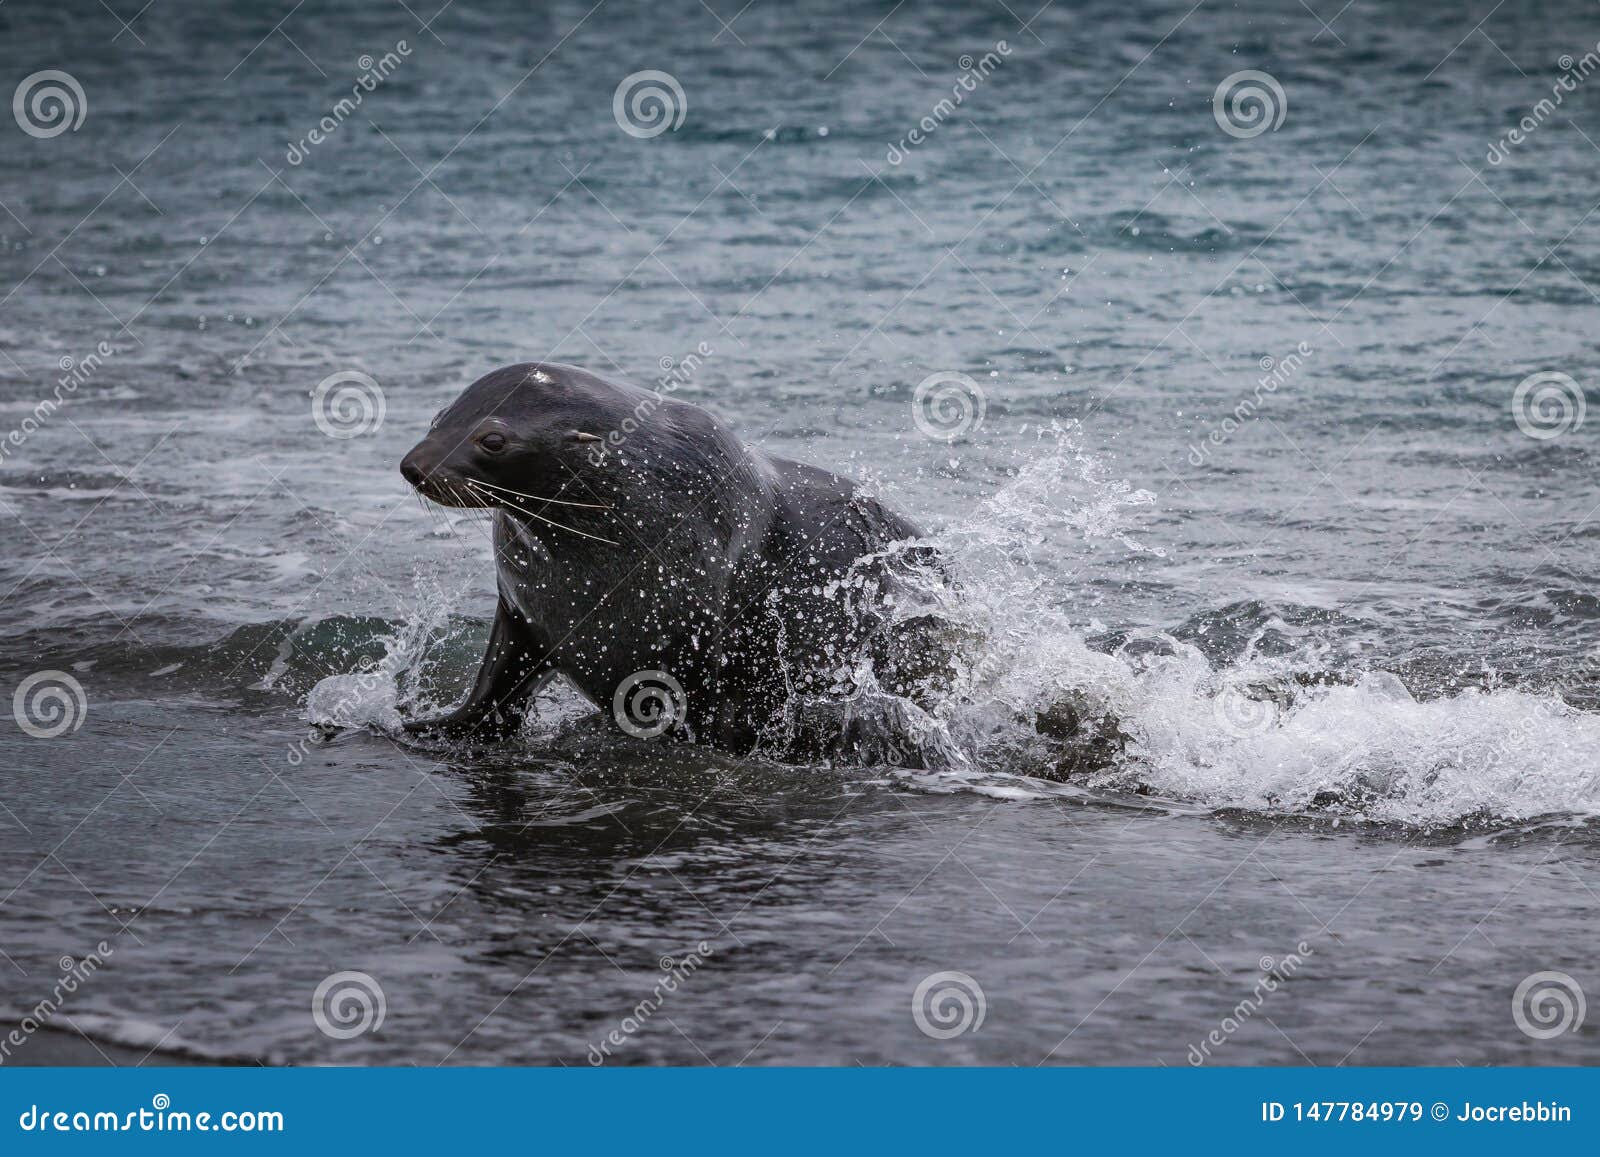 young fur seal exits the ocean